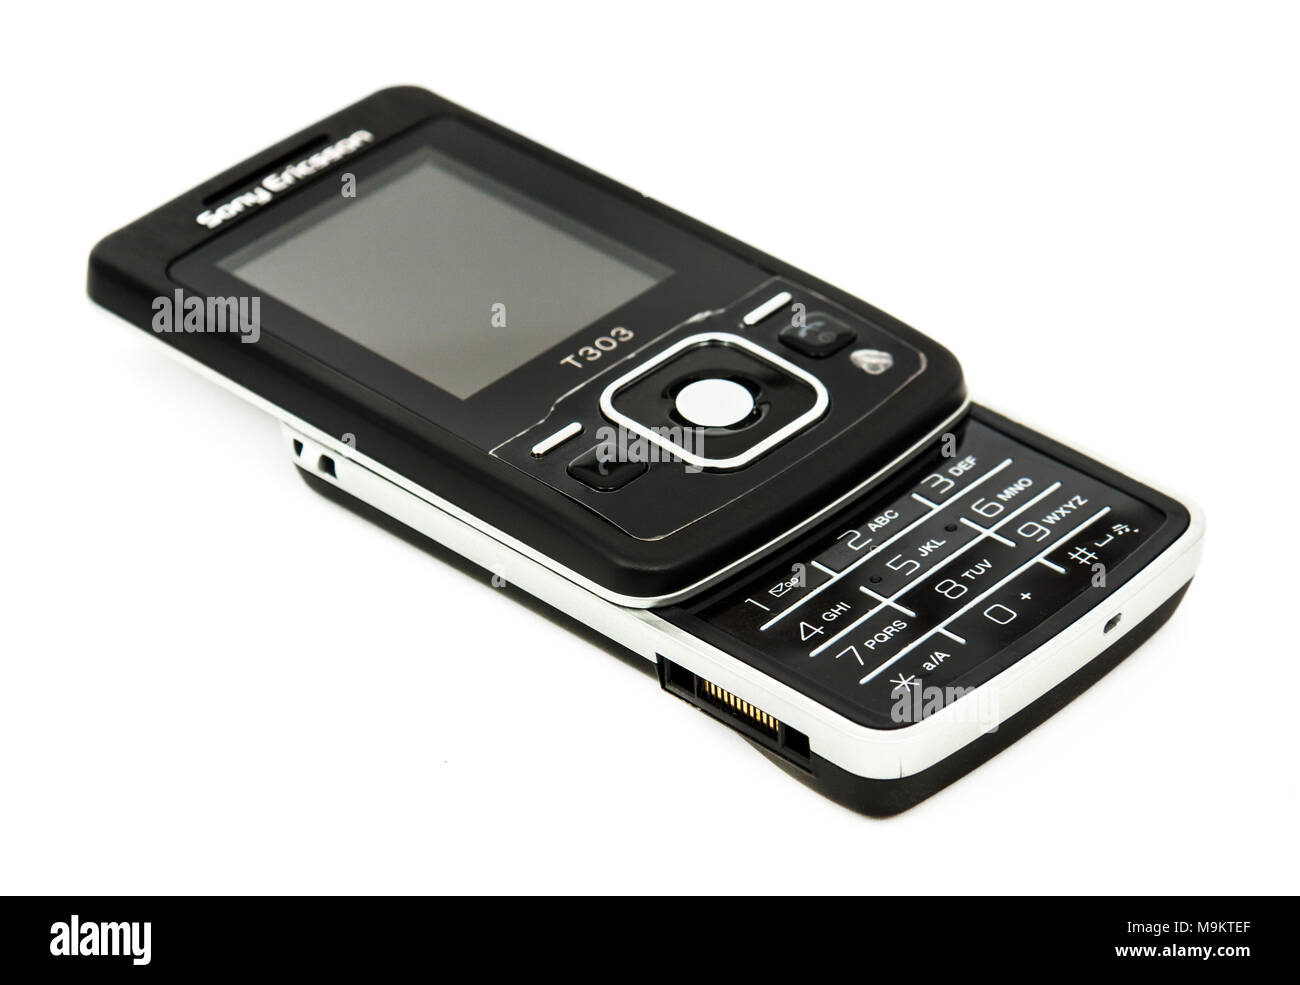 Sony Ericsson T303 Handy von 2008, mit einem Gewicht von 90 g und verfügt über einen WAP-Browser Zugriff auf (sehr langsam) das Internet vor dem 3G/4G existierte. Stockfoto